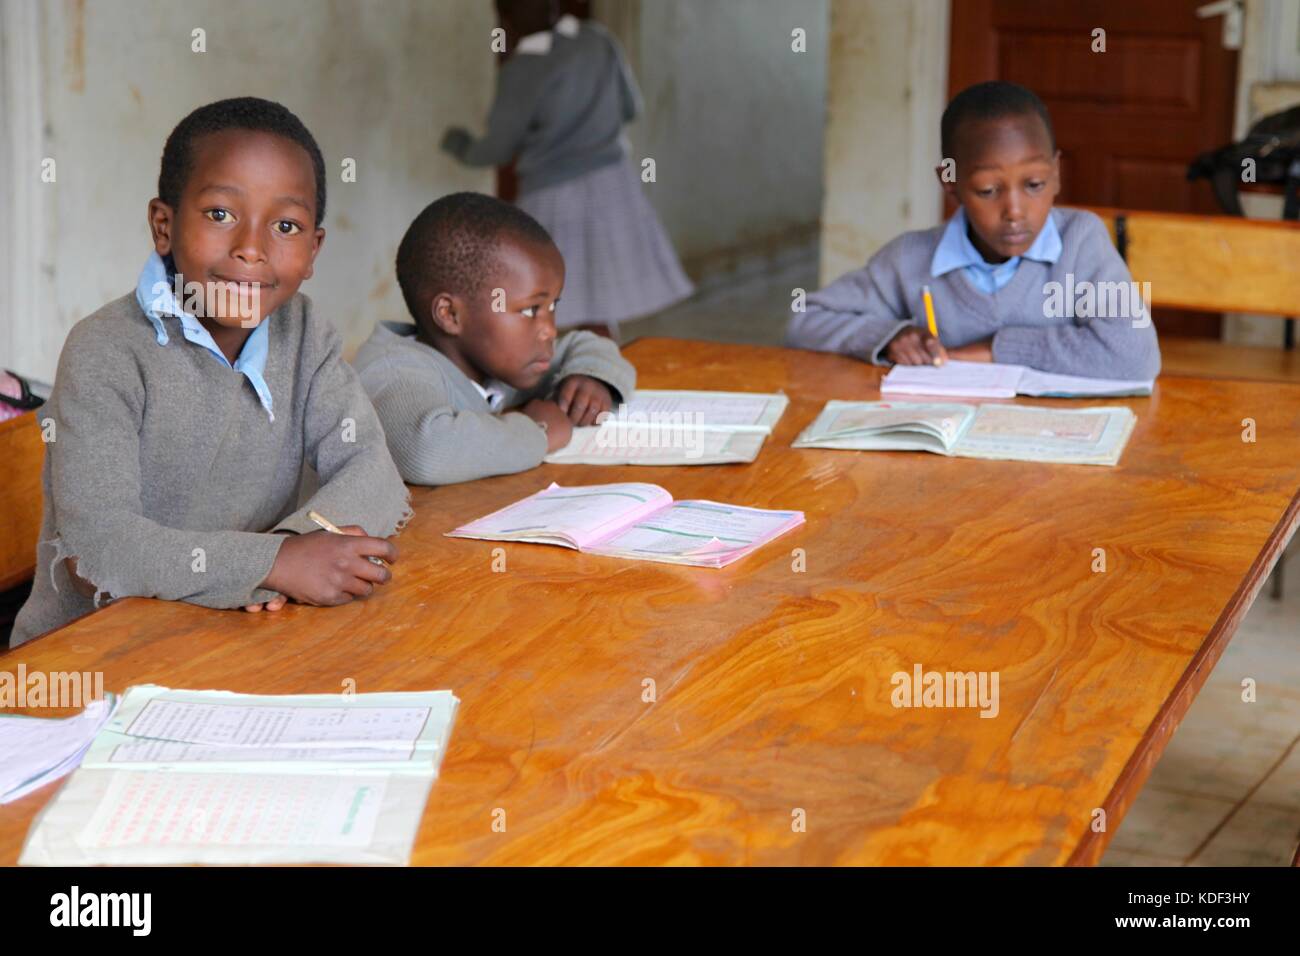 Trois garçons de l'école africaine le port de l'uniforme s'asseoir à un bureau étudiant, un garçon regarde en souriant de l'appareil photo Banque D'Images